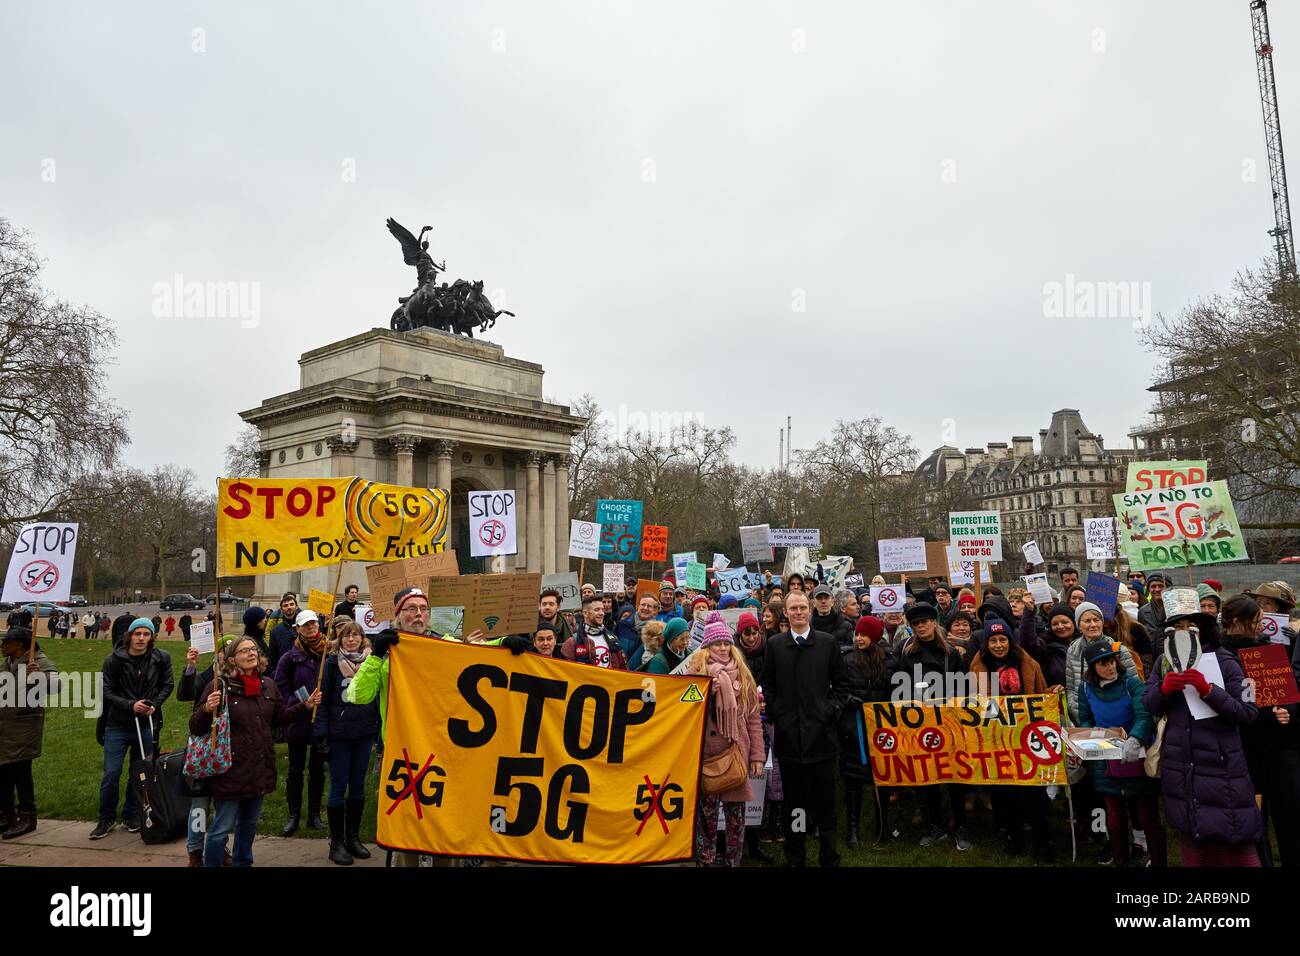 Londres, Reino Unido - 25 de enero de 2020: Los manifestantes se reúnen en Hyde Park Corner pidiendo que se detenga la introducción de la tecnología 5G. Foto de stock